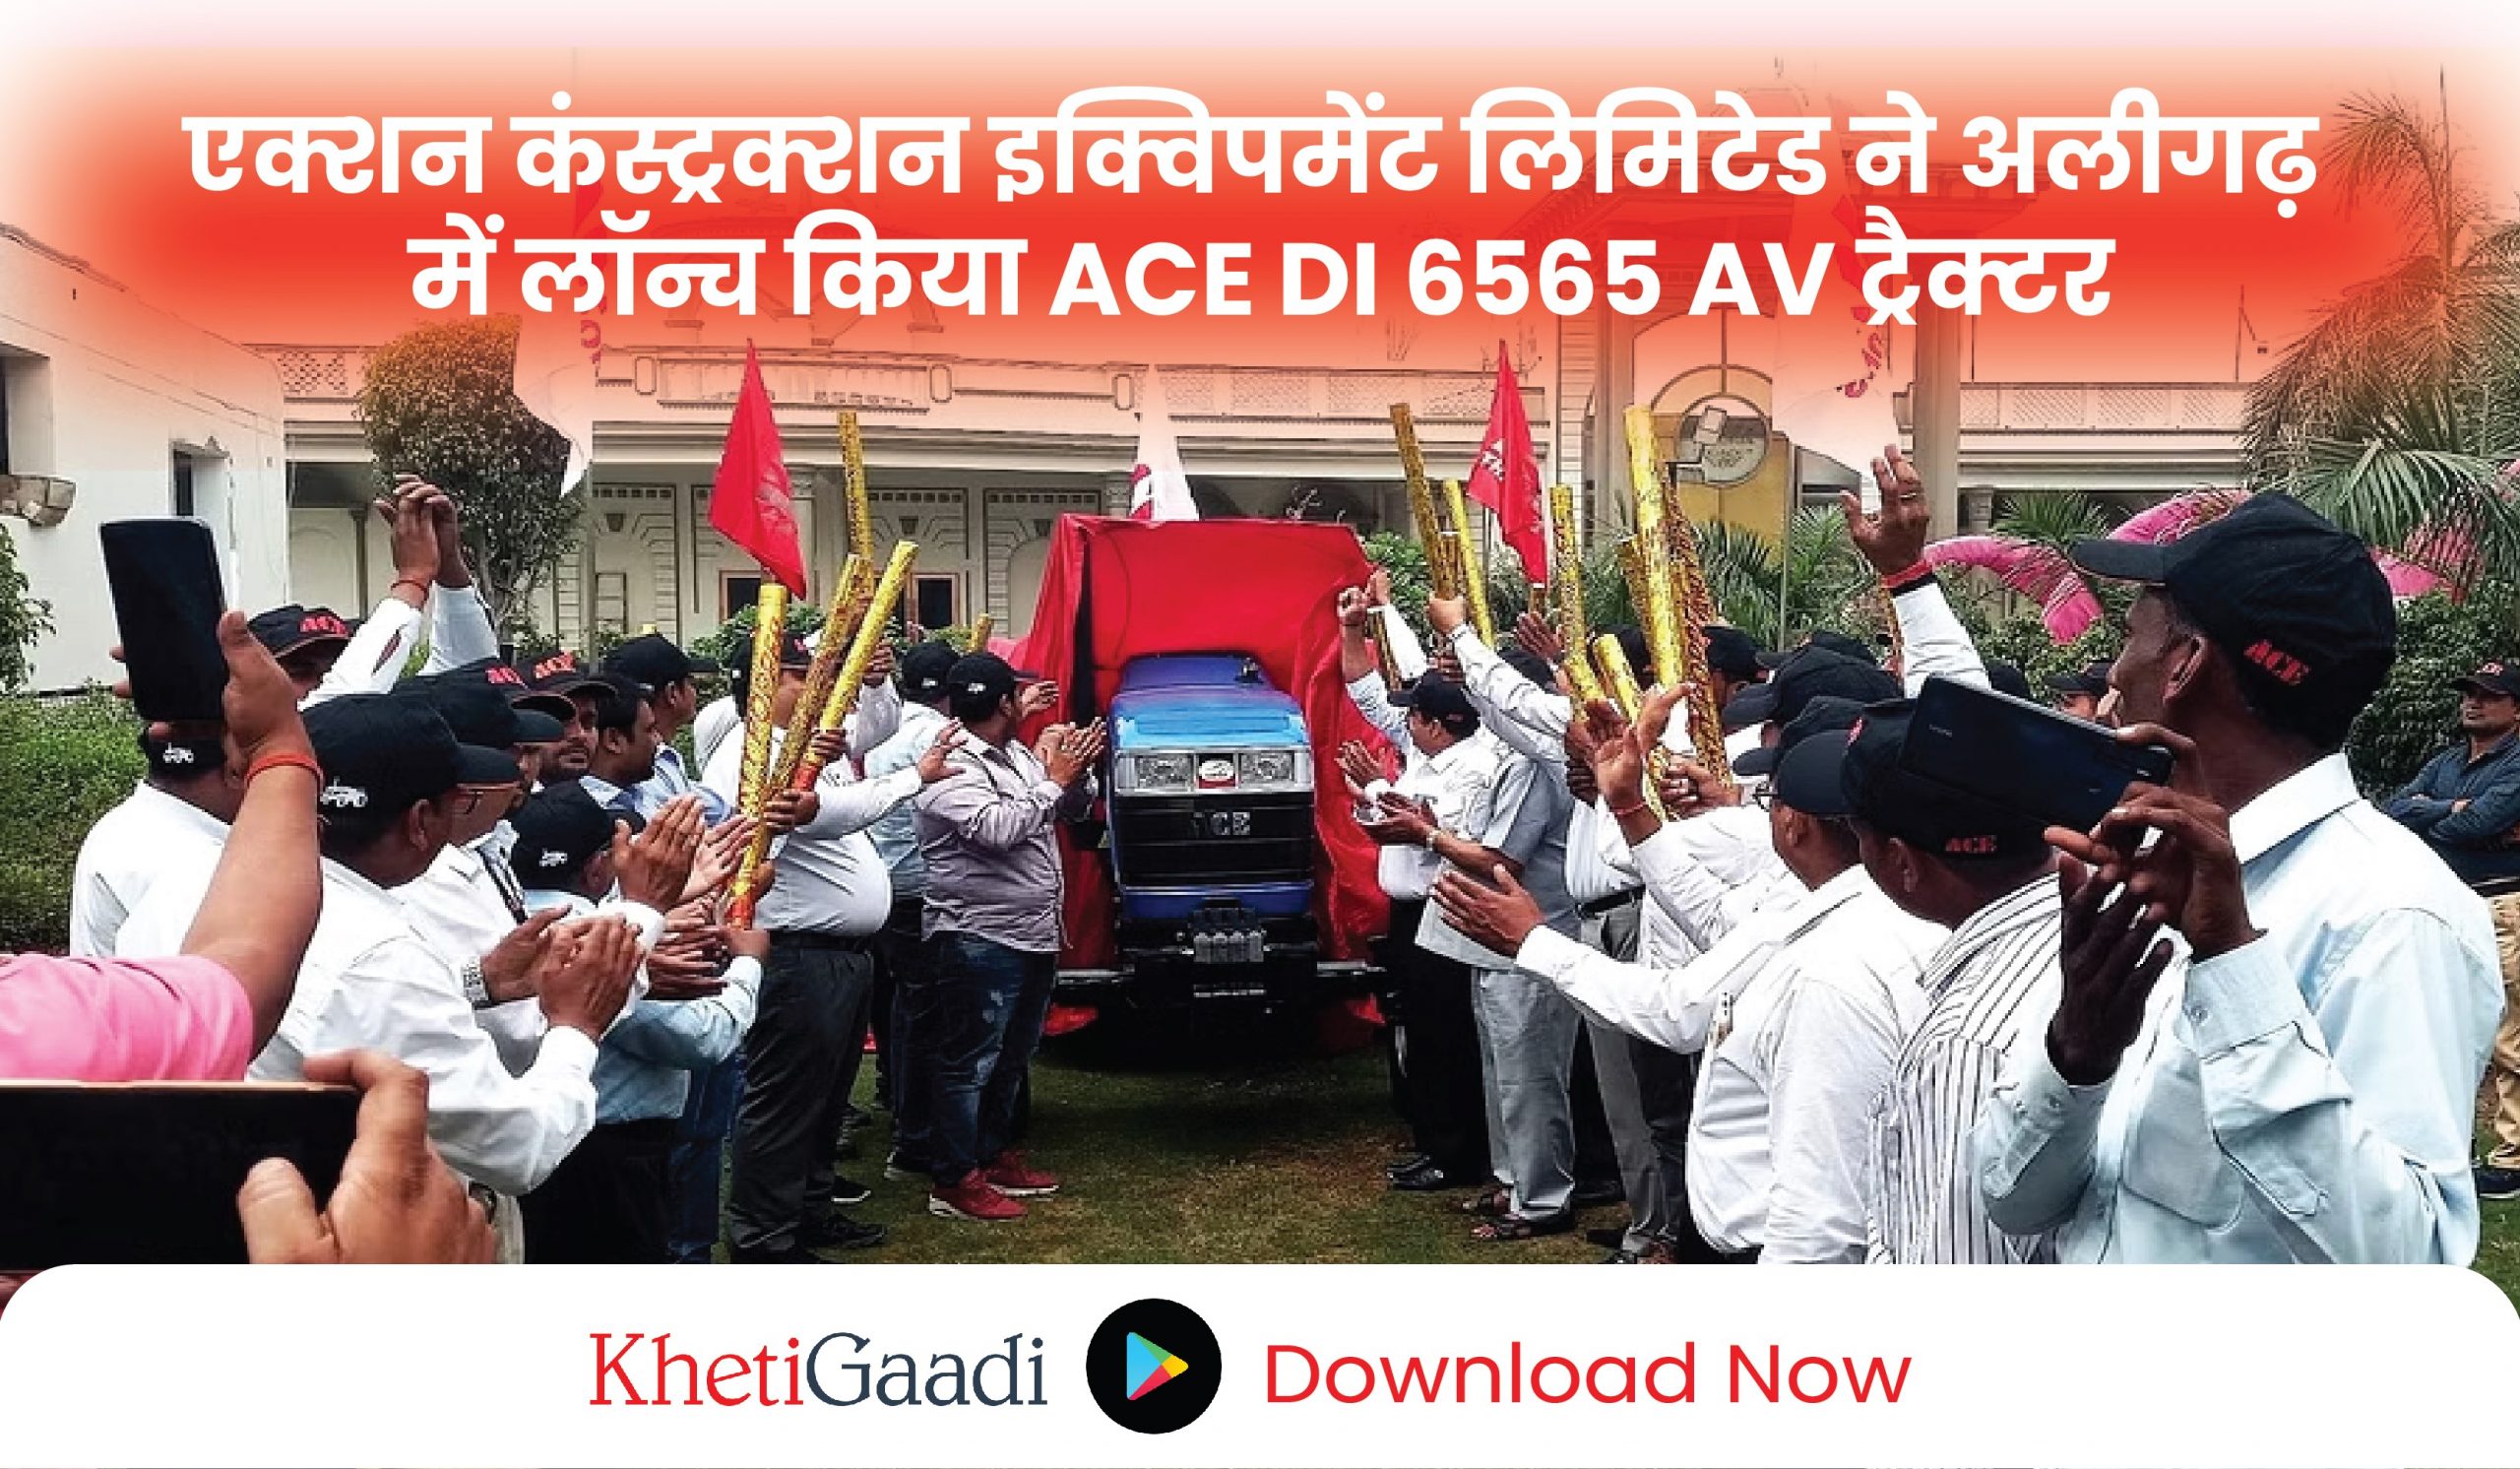 ACE ने अलीगढ़ में लॉन्च किया ACE DI 6565 AV ट्रैक्टर,जानिए विशेषताएं